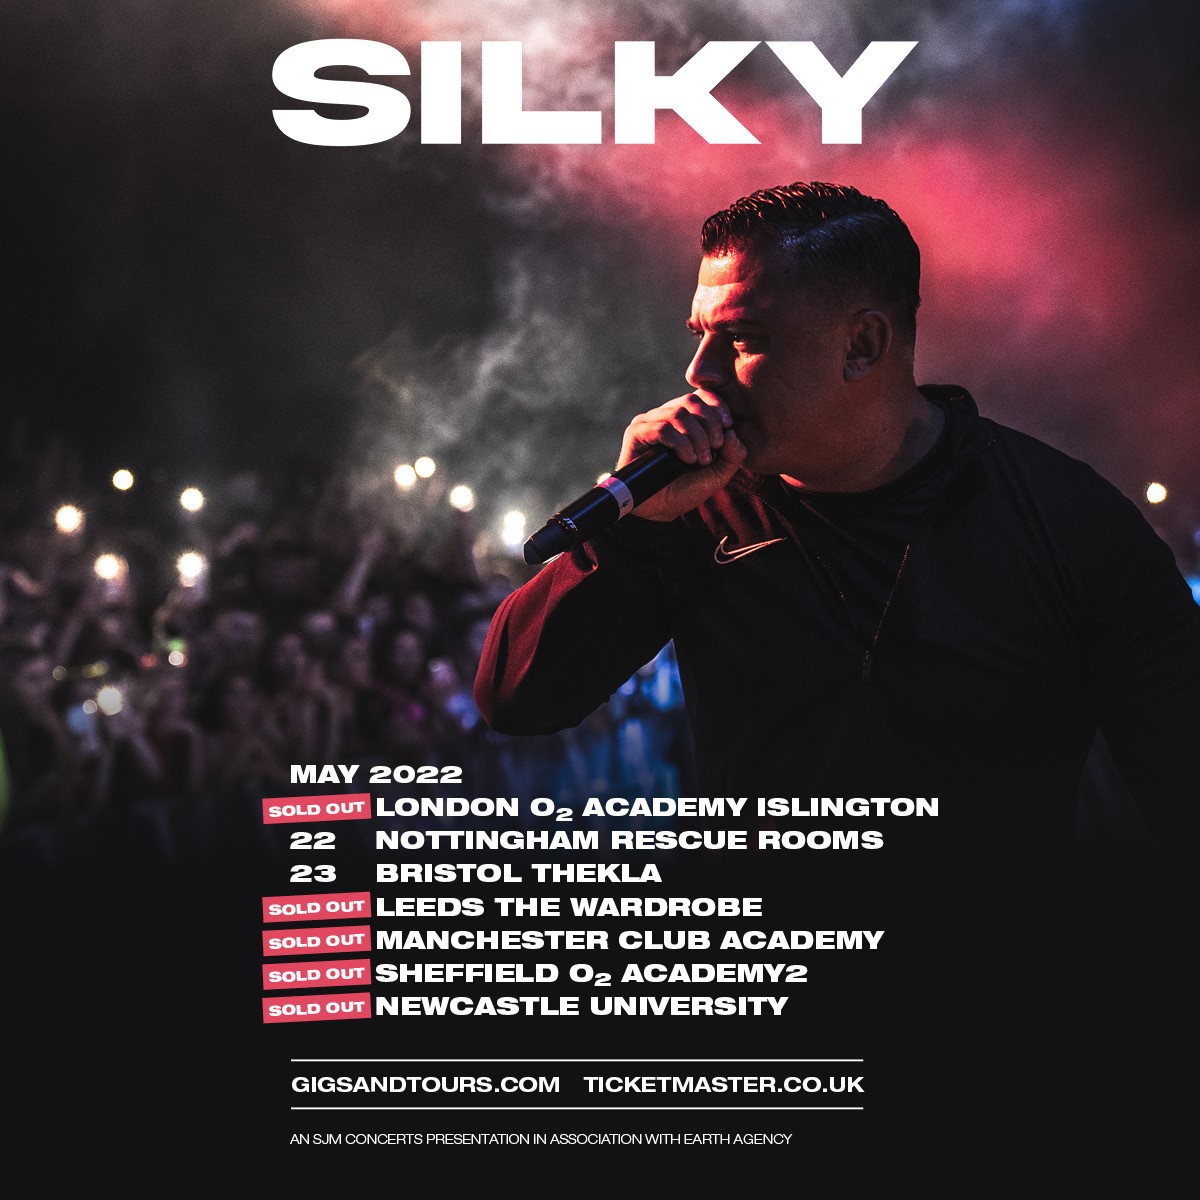 Silky – Playing Games (Remix) Lyrics